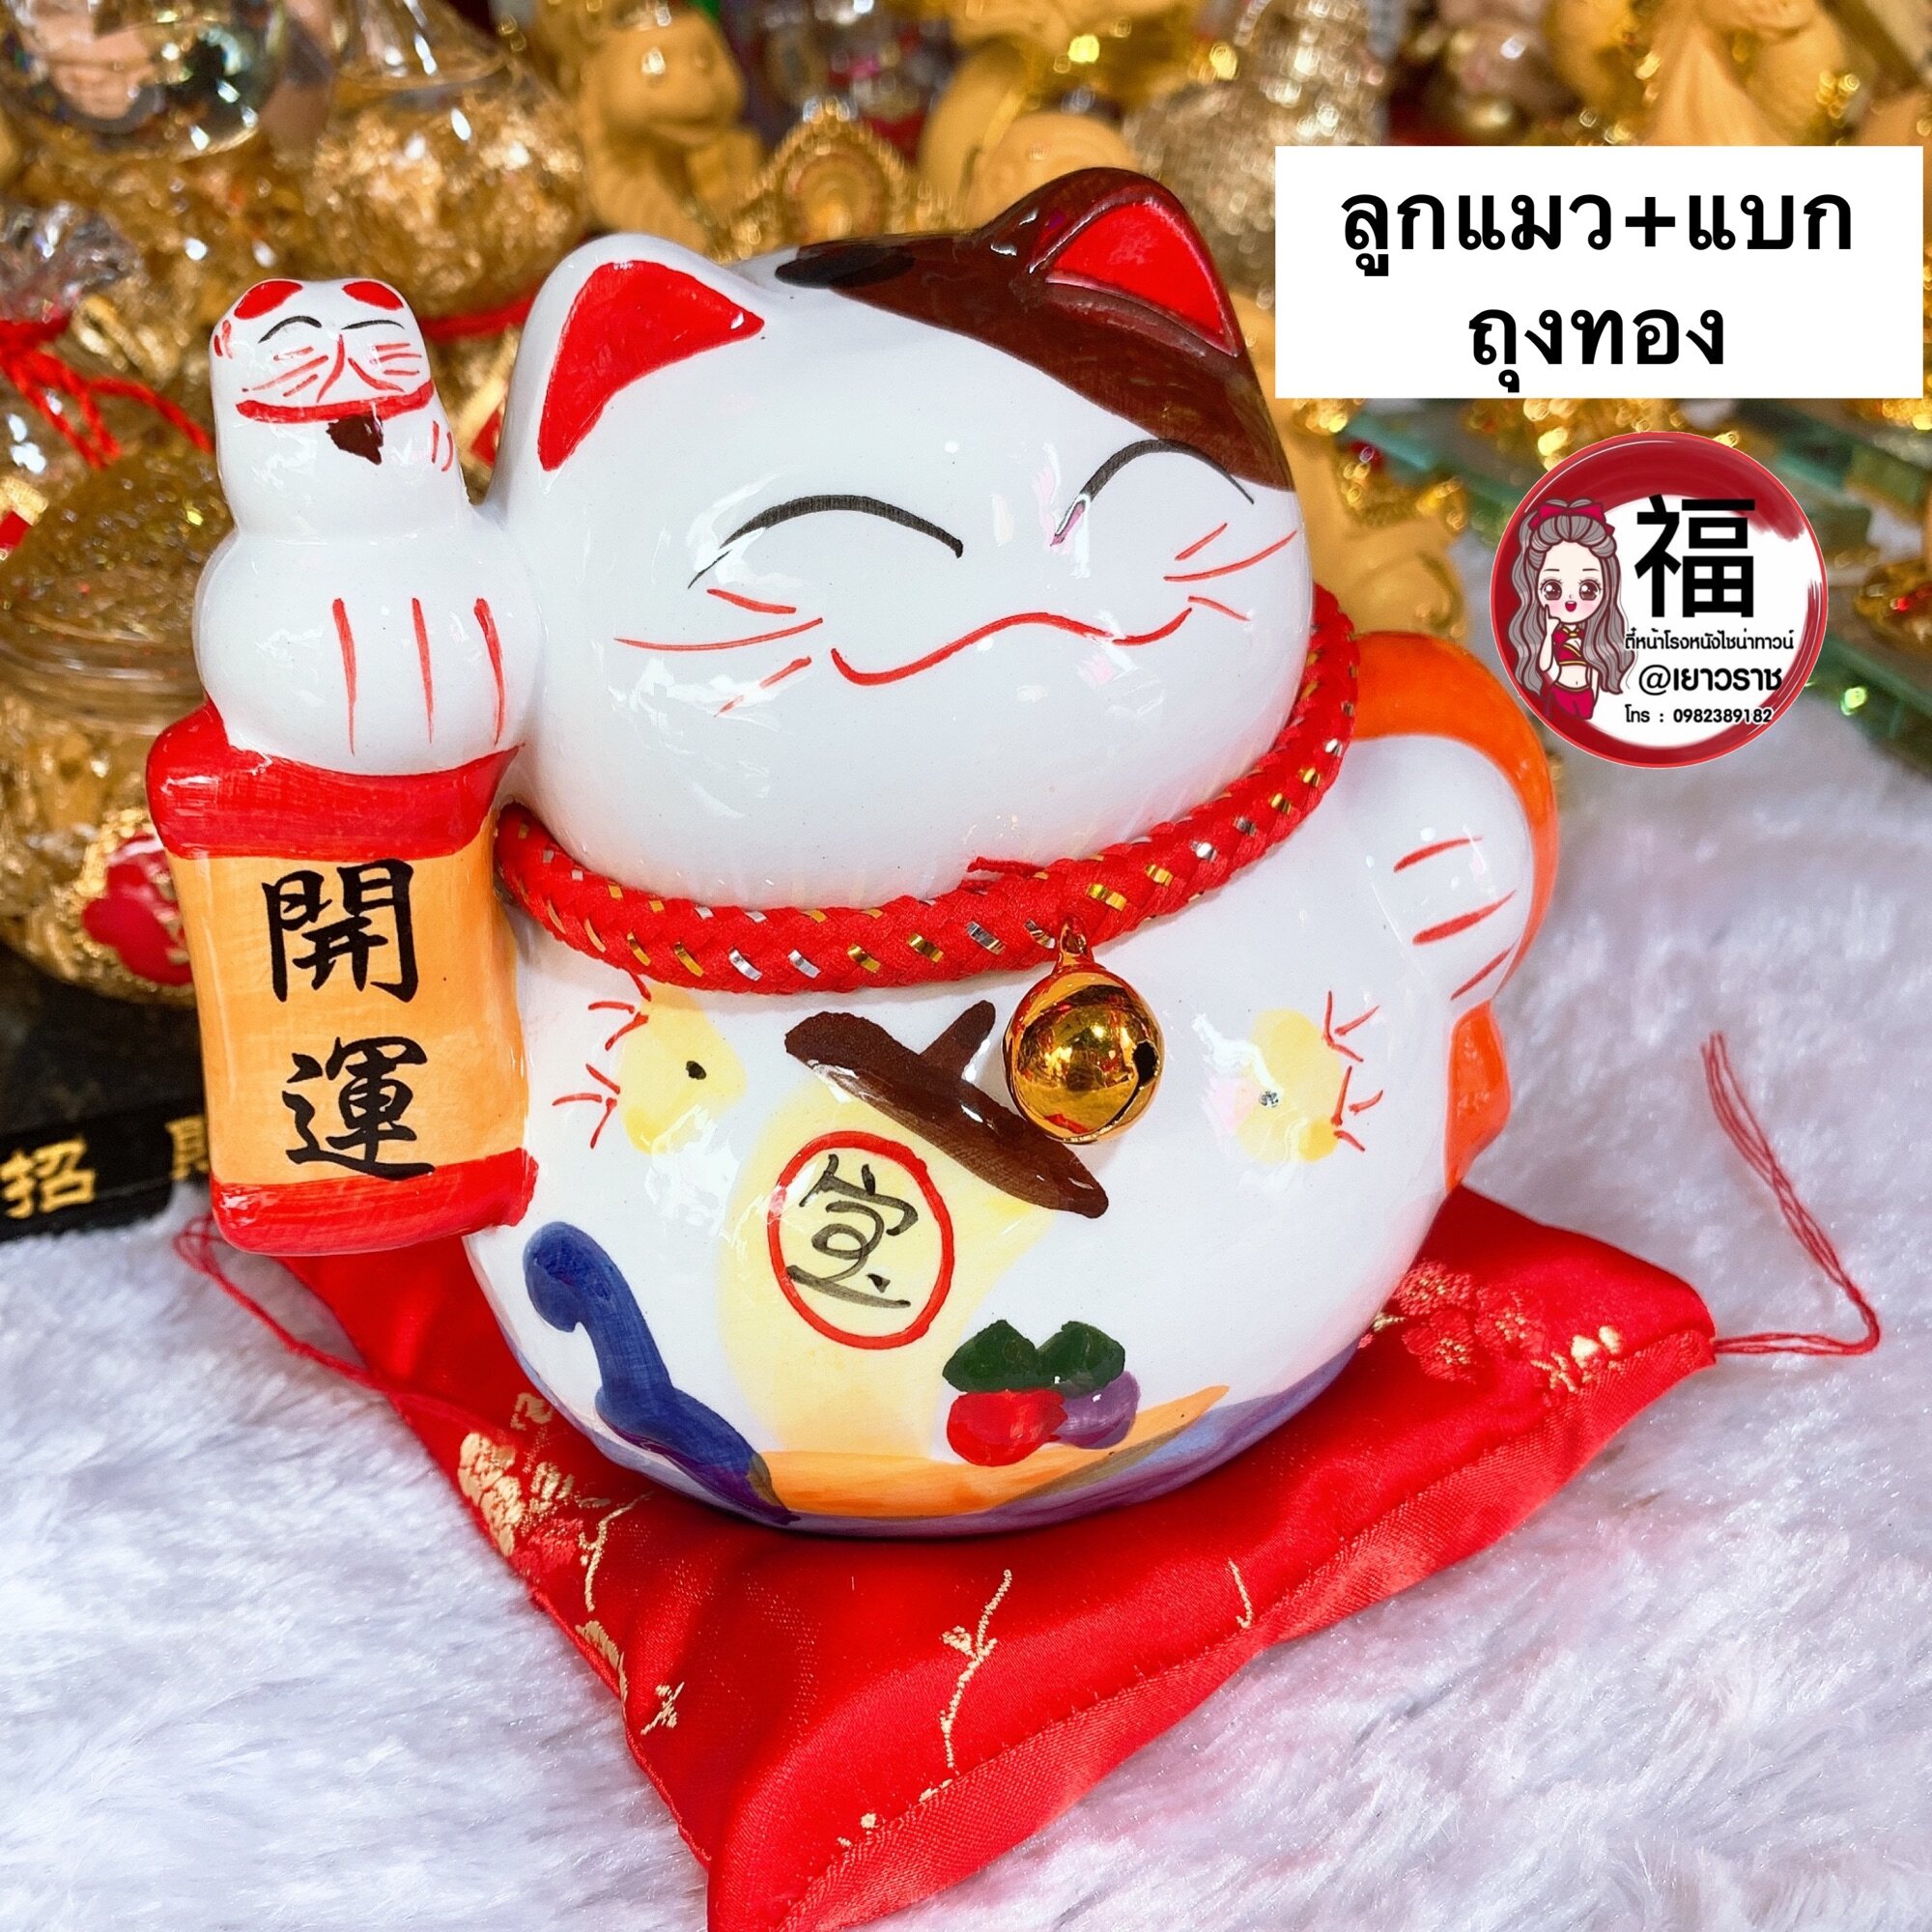 แมวกวัก แมวนำโชค แมวสไตล์ญี่ปุ่น สูง 4.5นิ้ว กวักโชคลาภเงินทอง เรียกลูกค้า - เซรามิค ของฝาก ของมงคล ตรุษจีน เปิดกิจการ เปิดร้านค้า